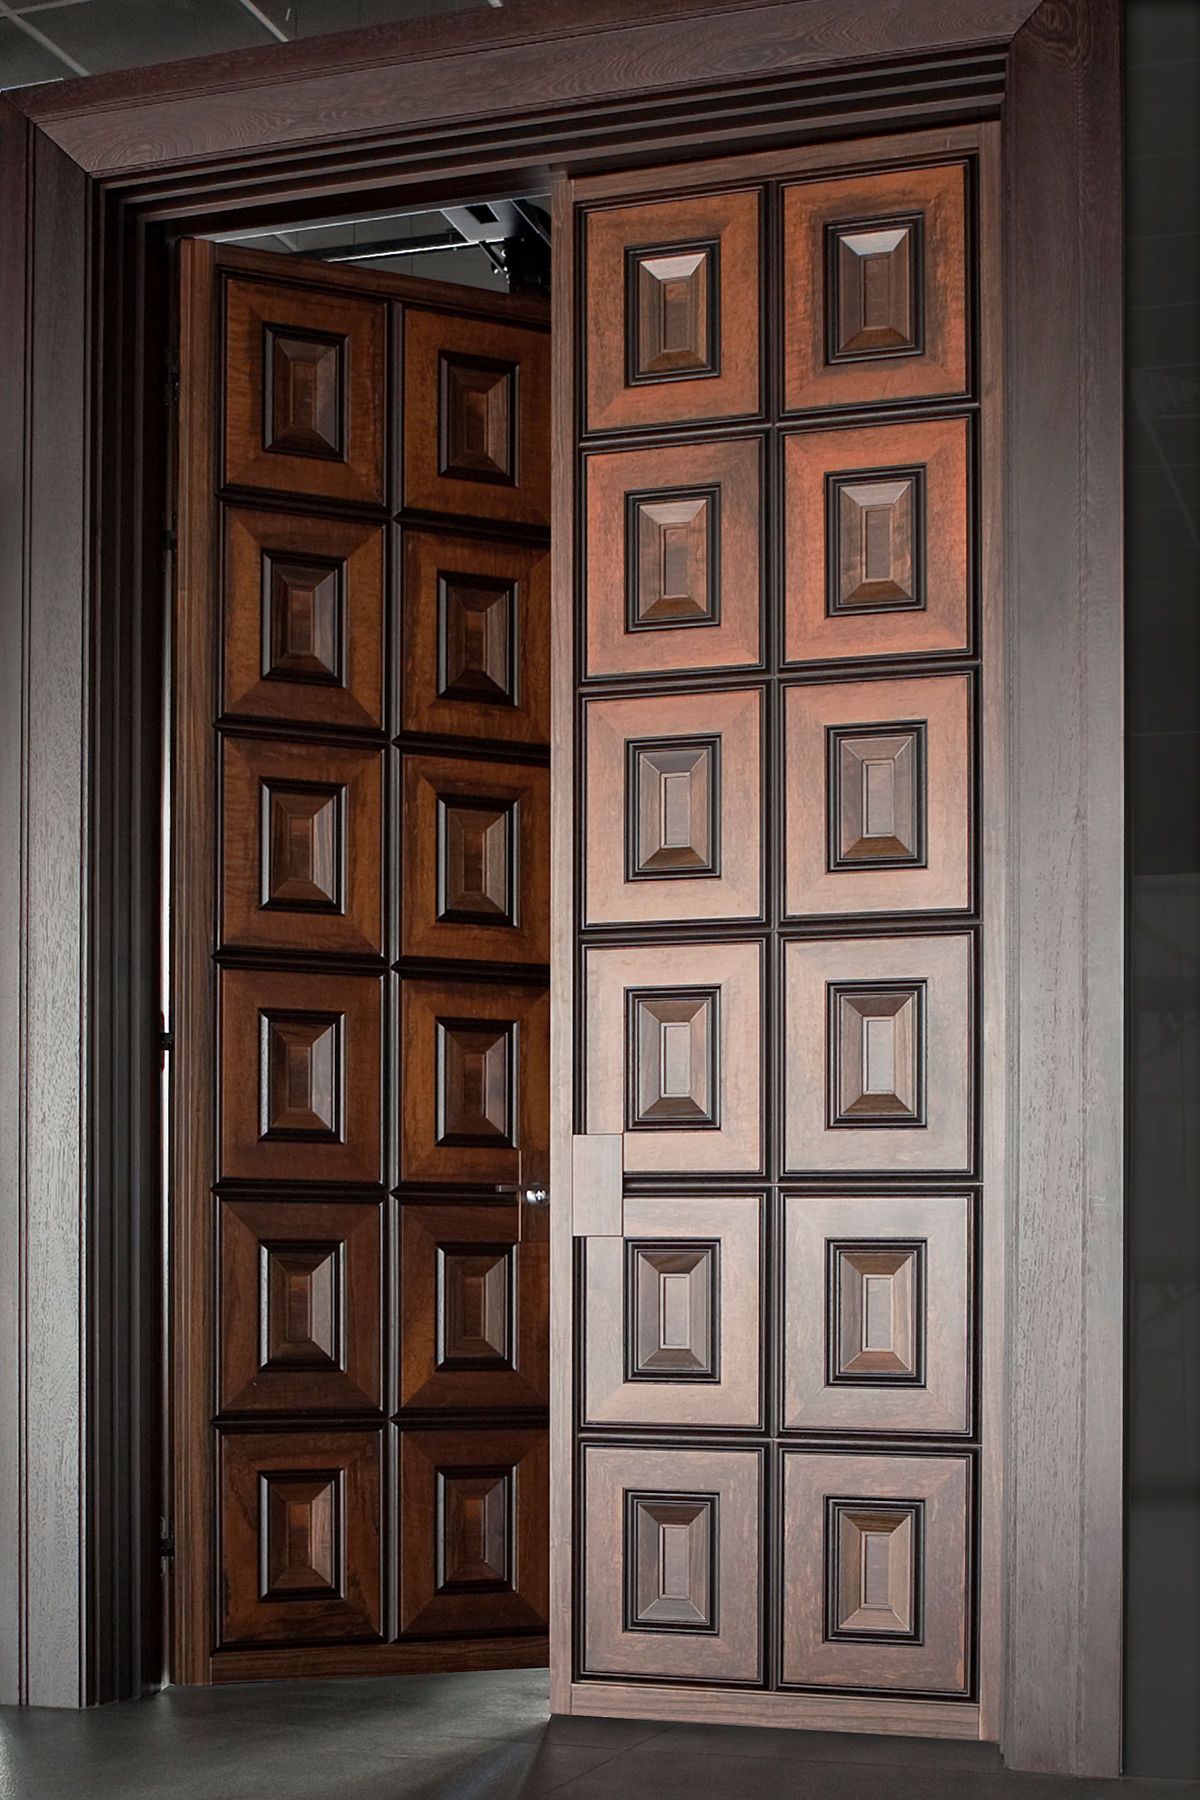 ДВЕРЬ /РАСПАШНАЯ/Коллекция «Классицизм» | doors | Pinterest | Doors ...